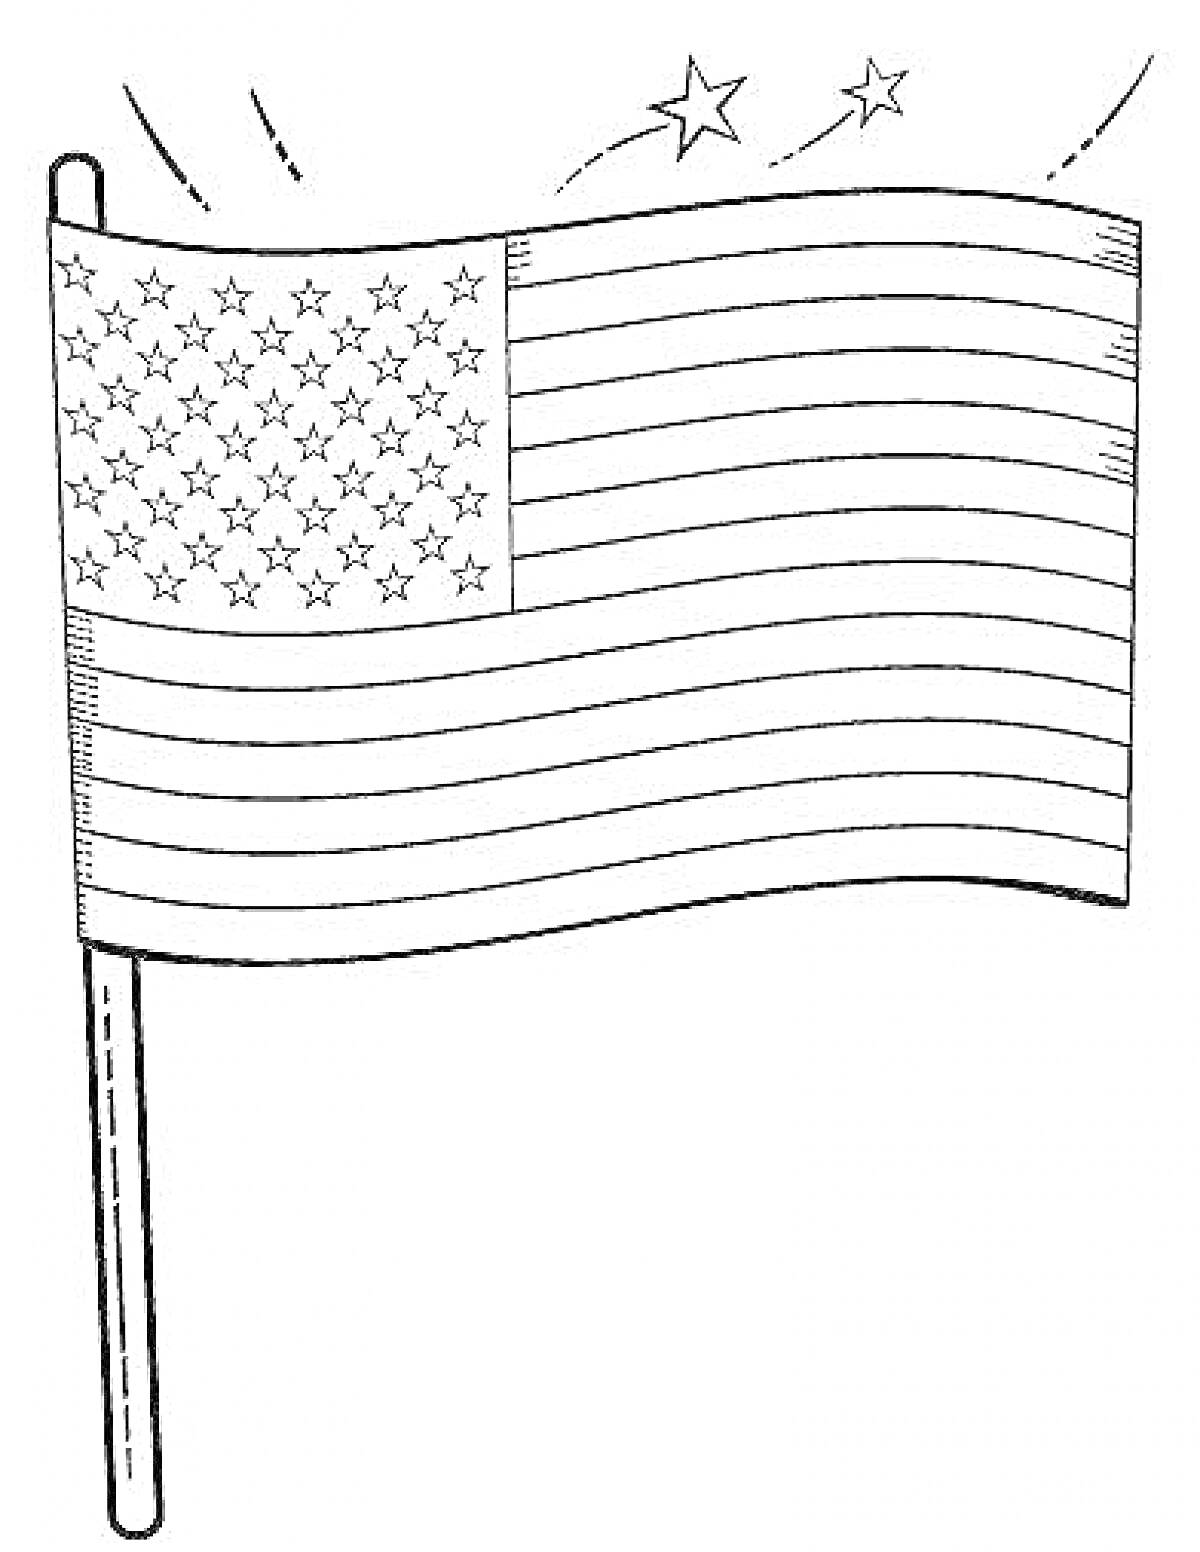 Раскраска Флаг США с 50 звездами, 13 полосами и дополнительными звездами вокруг